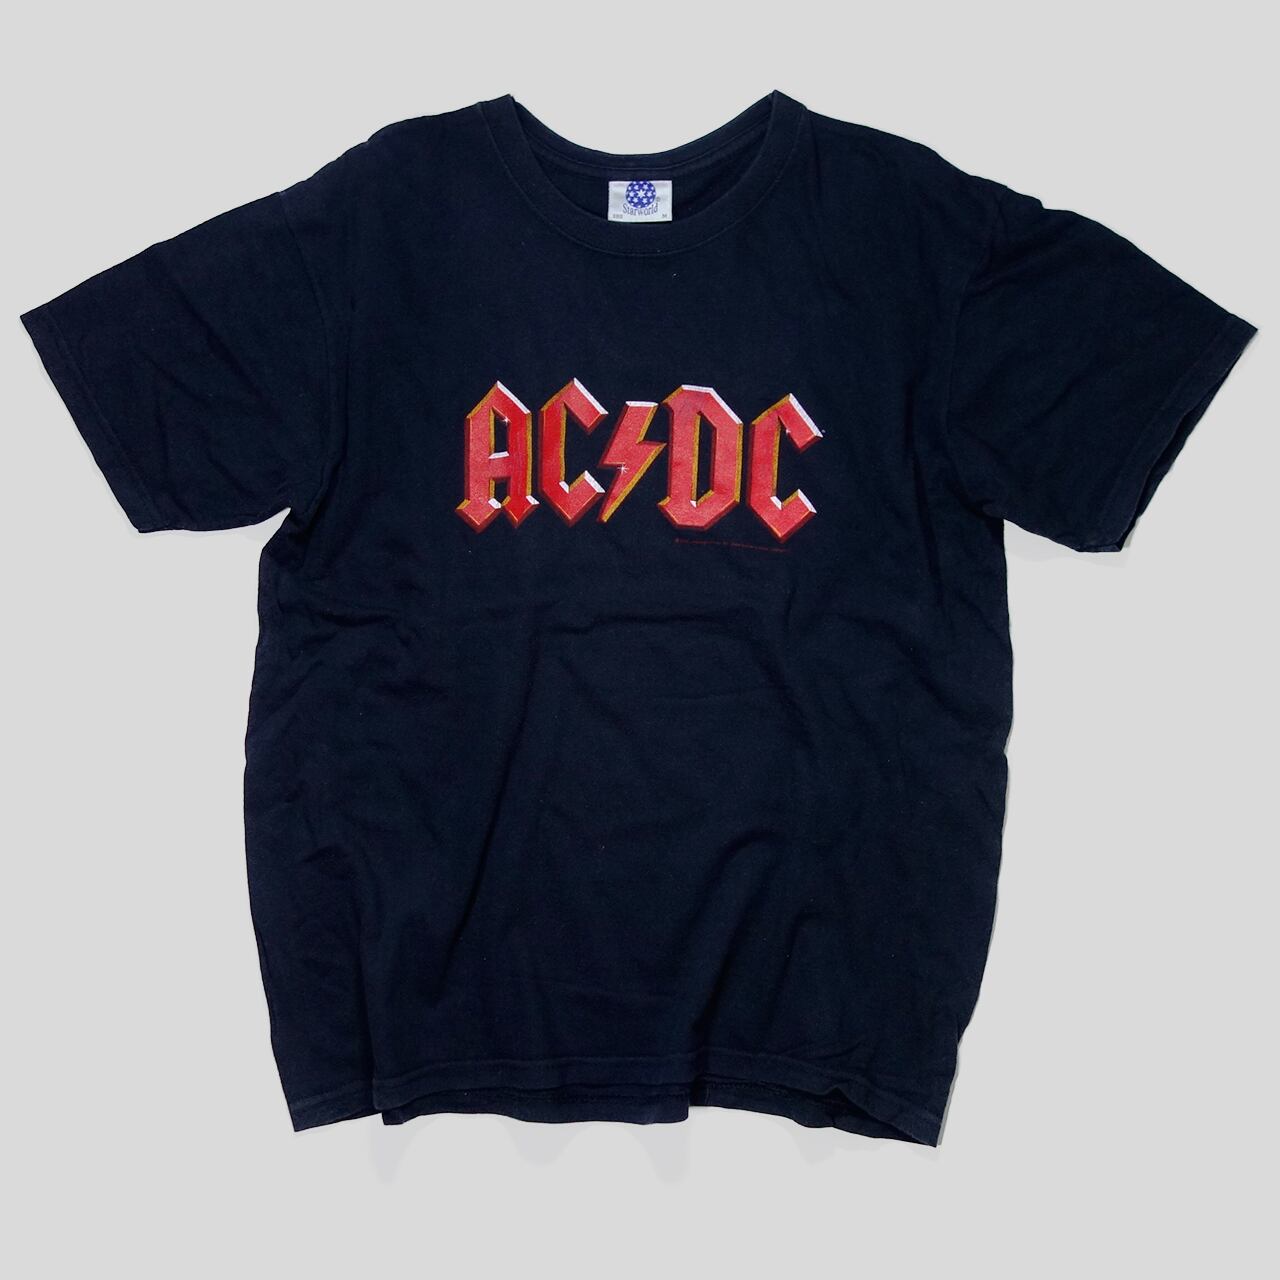 00s AC/DC バンド Tシャツ 赤 ロゴ | 古着 映画 Tシャツ 通販 STUFF ROOM